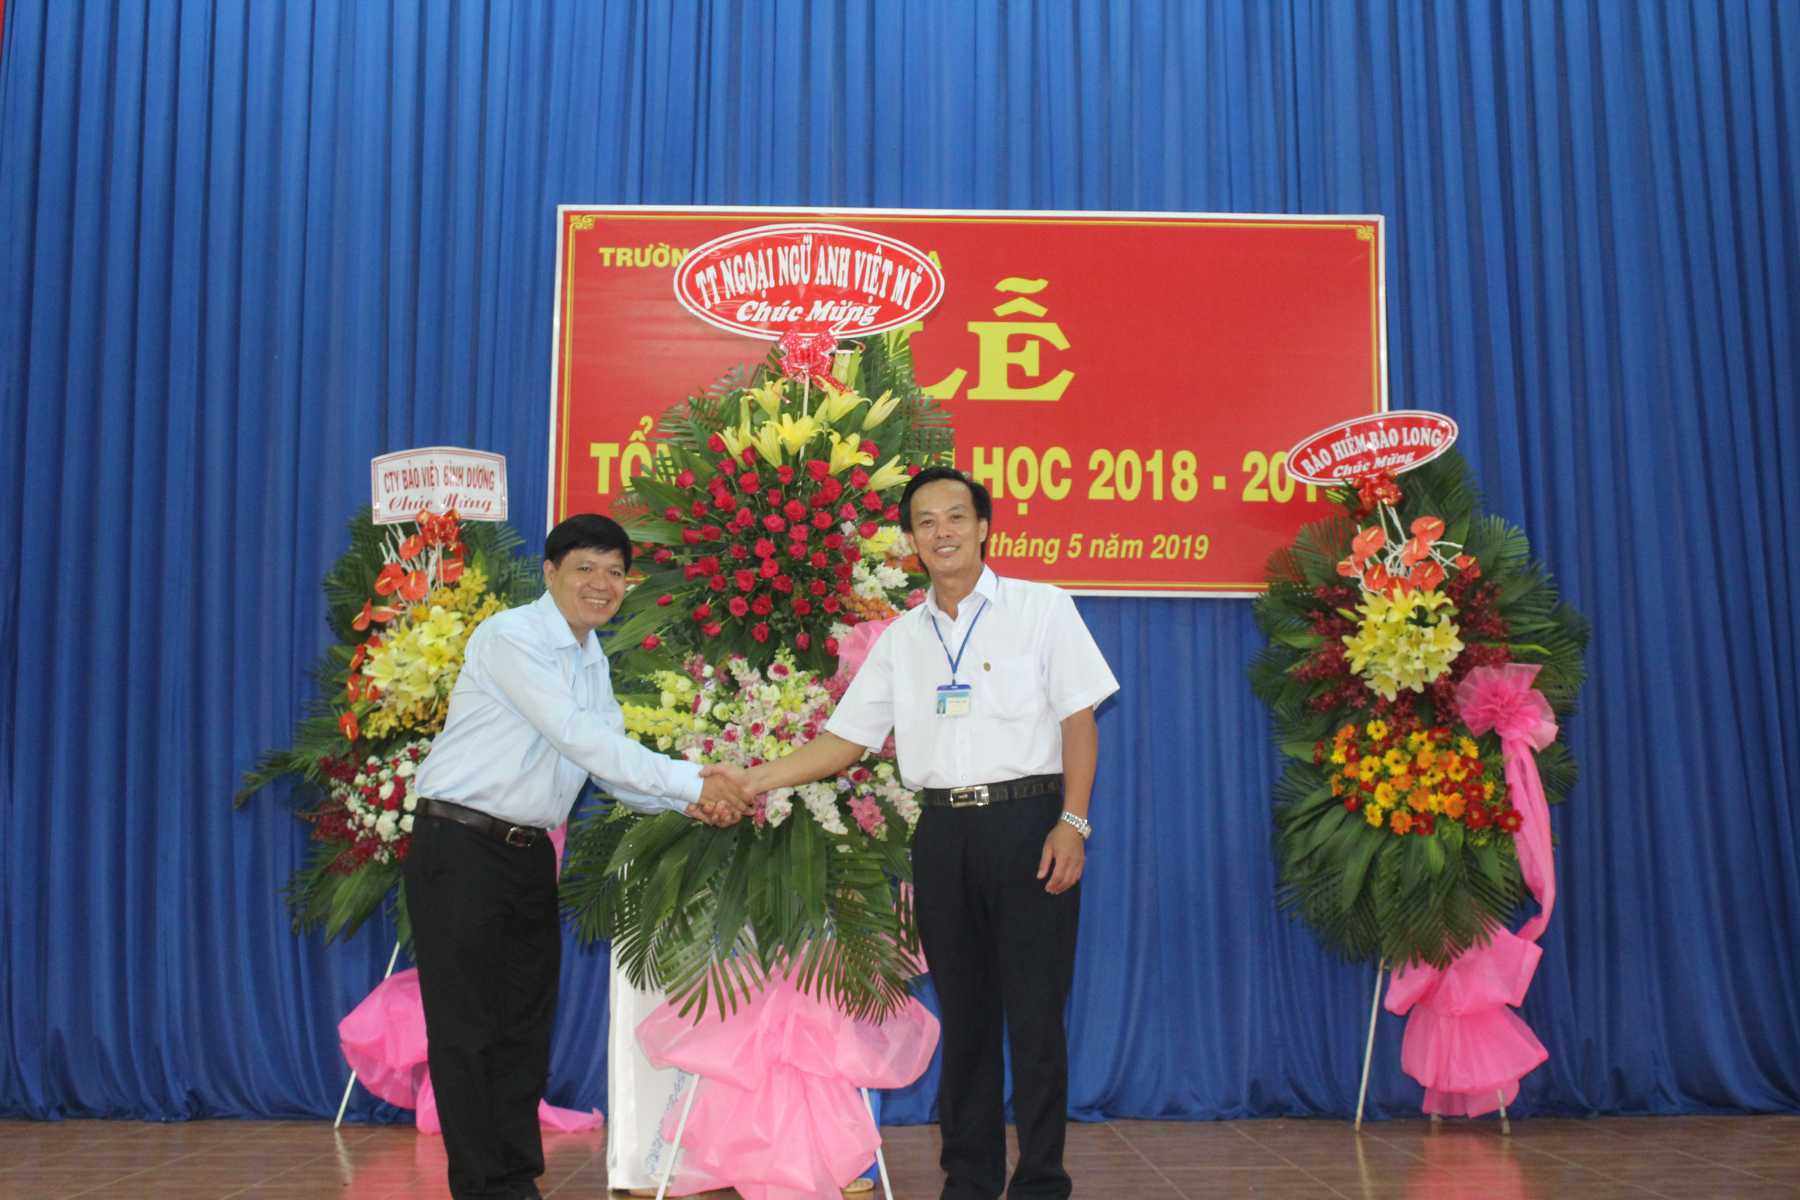 Trung tâm ngoại ngữ Anh – Việt – Mỹ tặng hoa chúc mừng